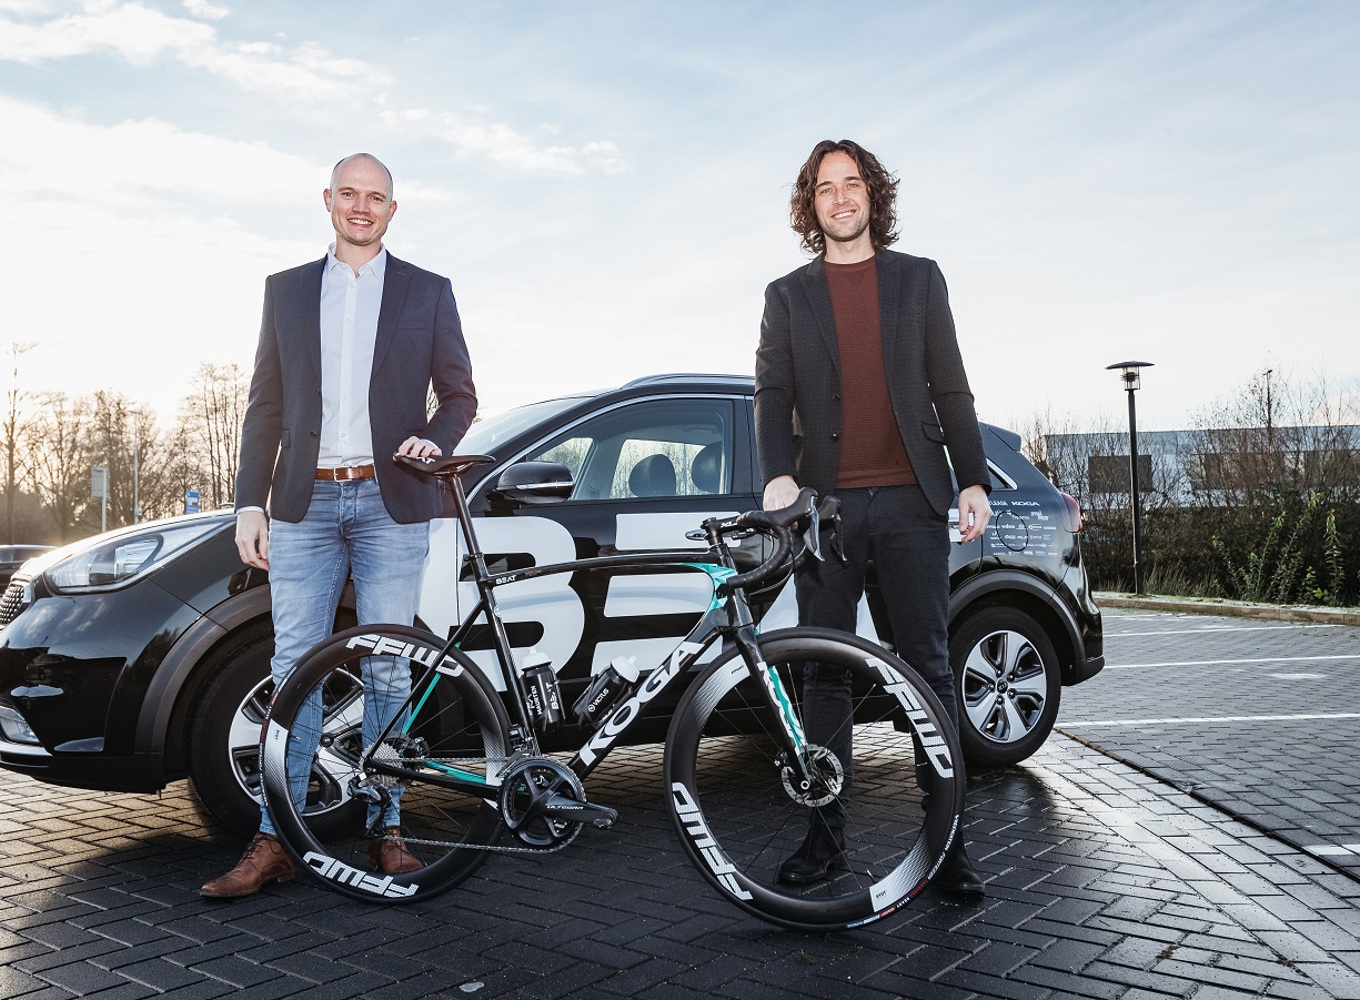 Geert Broekhuizen (BEAT) en Lars Smit (Buckaroo) bevestigen partnership in wielersport en payments